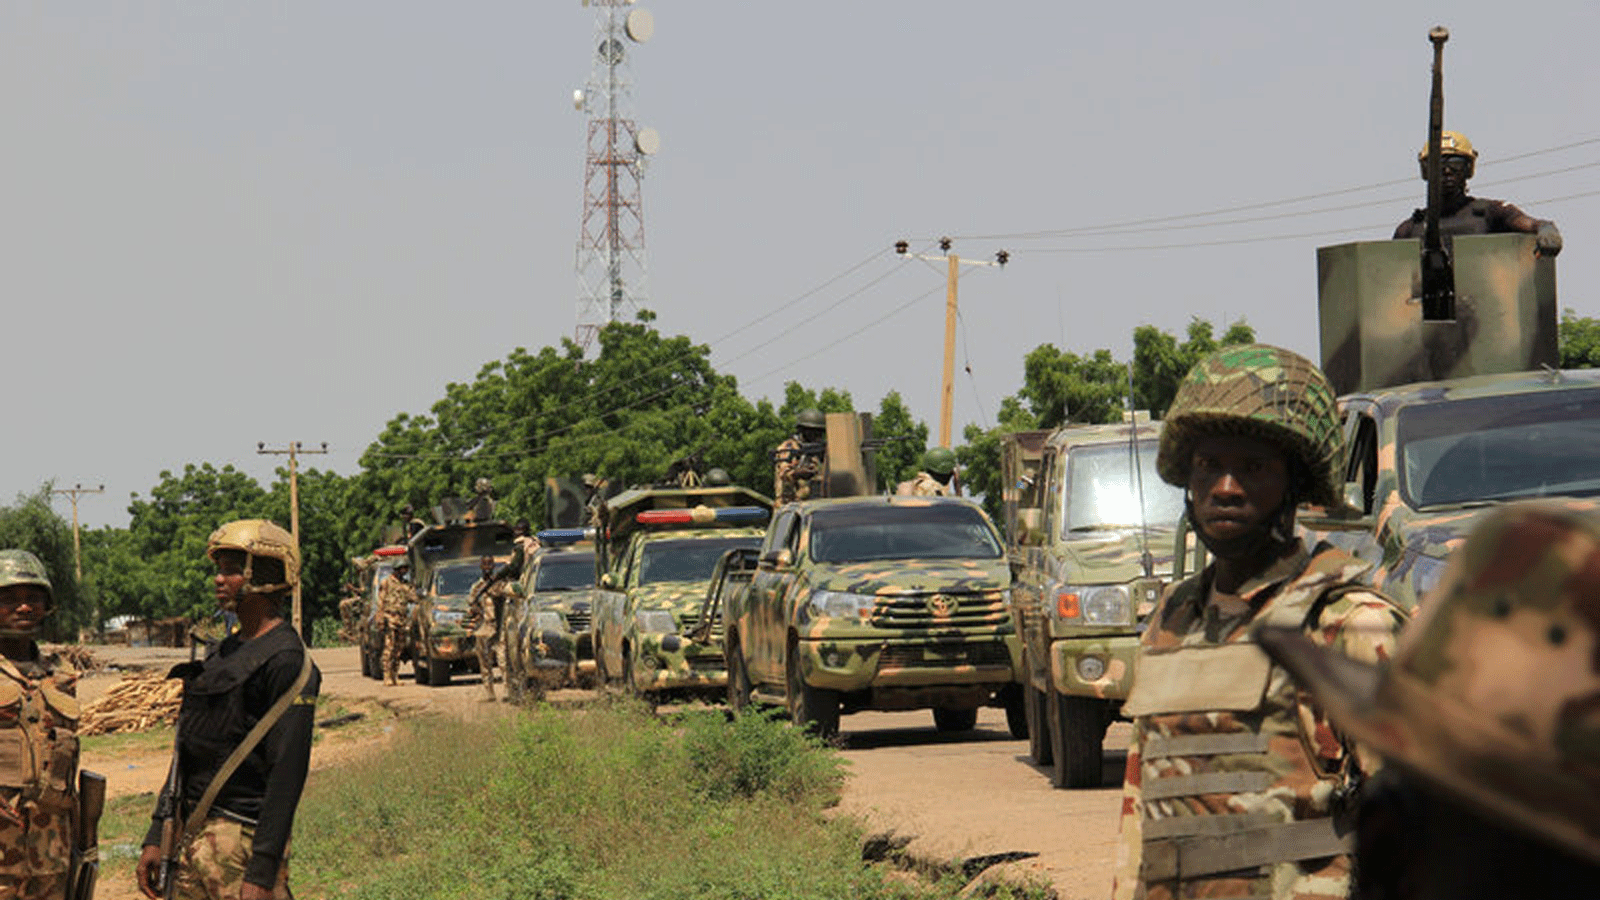 دورية لجنود نيجيريين في 12 تشرين الأول / أكتوبر 2019 بعد أن نفذ مسلحون يشتبه بانتمائهم لتنظيم الدولة الإسلامية في غرب إفريقيا (ISWAP) هجوماً مميتاً في قرية تونغوش بولاية بورنو